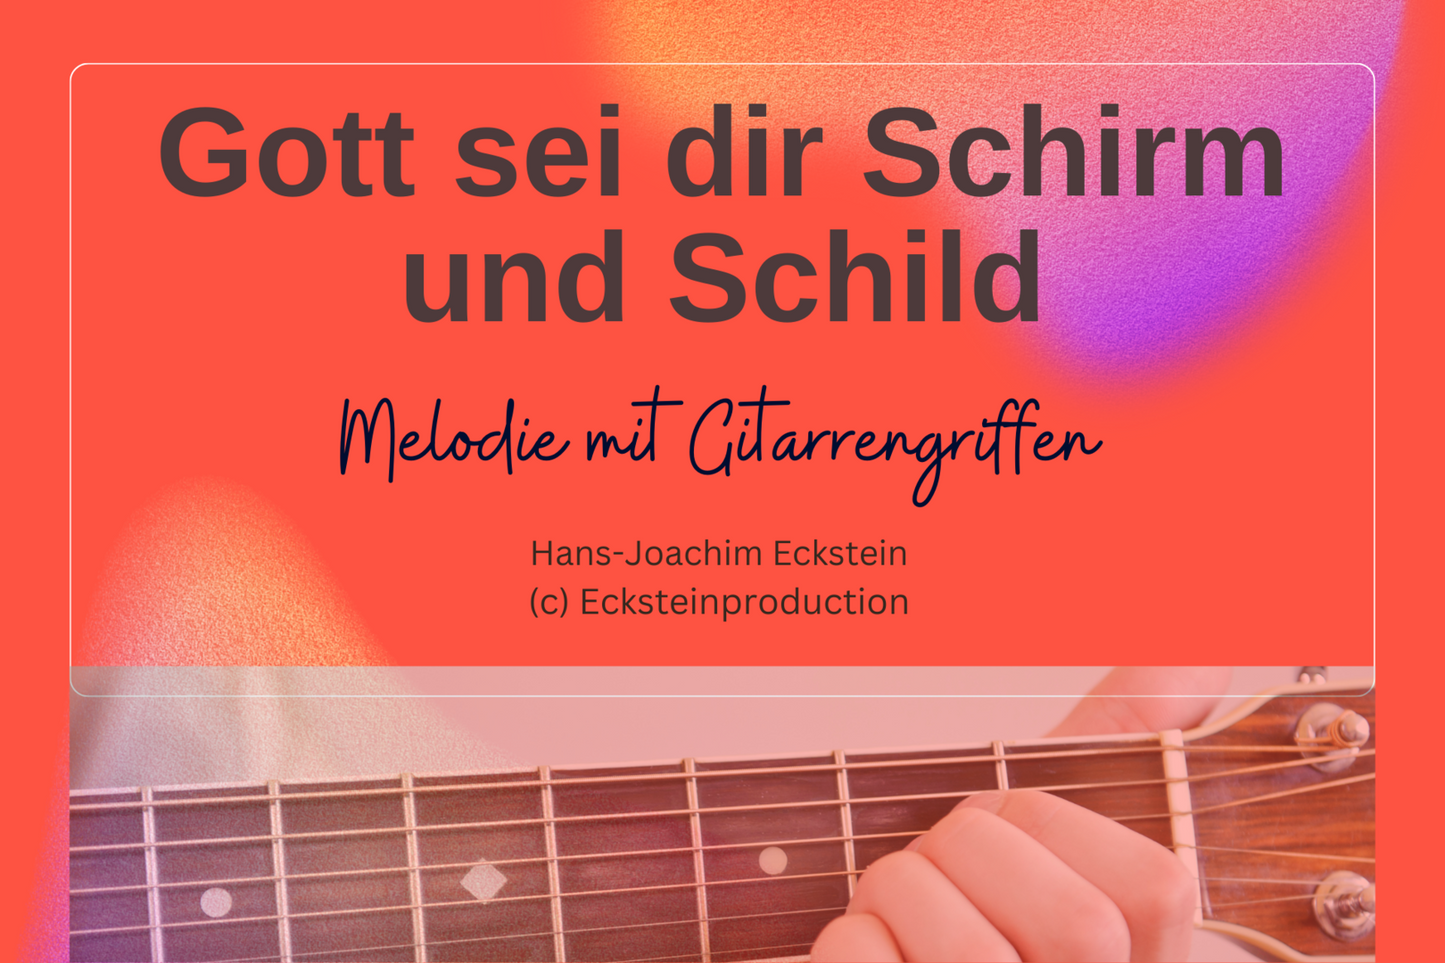 Gott sei dir Schirm und Schild (Melodie mit Gitarrengriffen) Hans-Joachim Eckstein